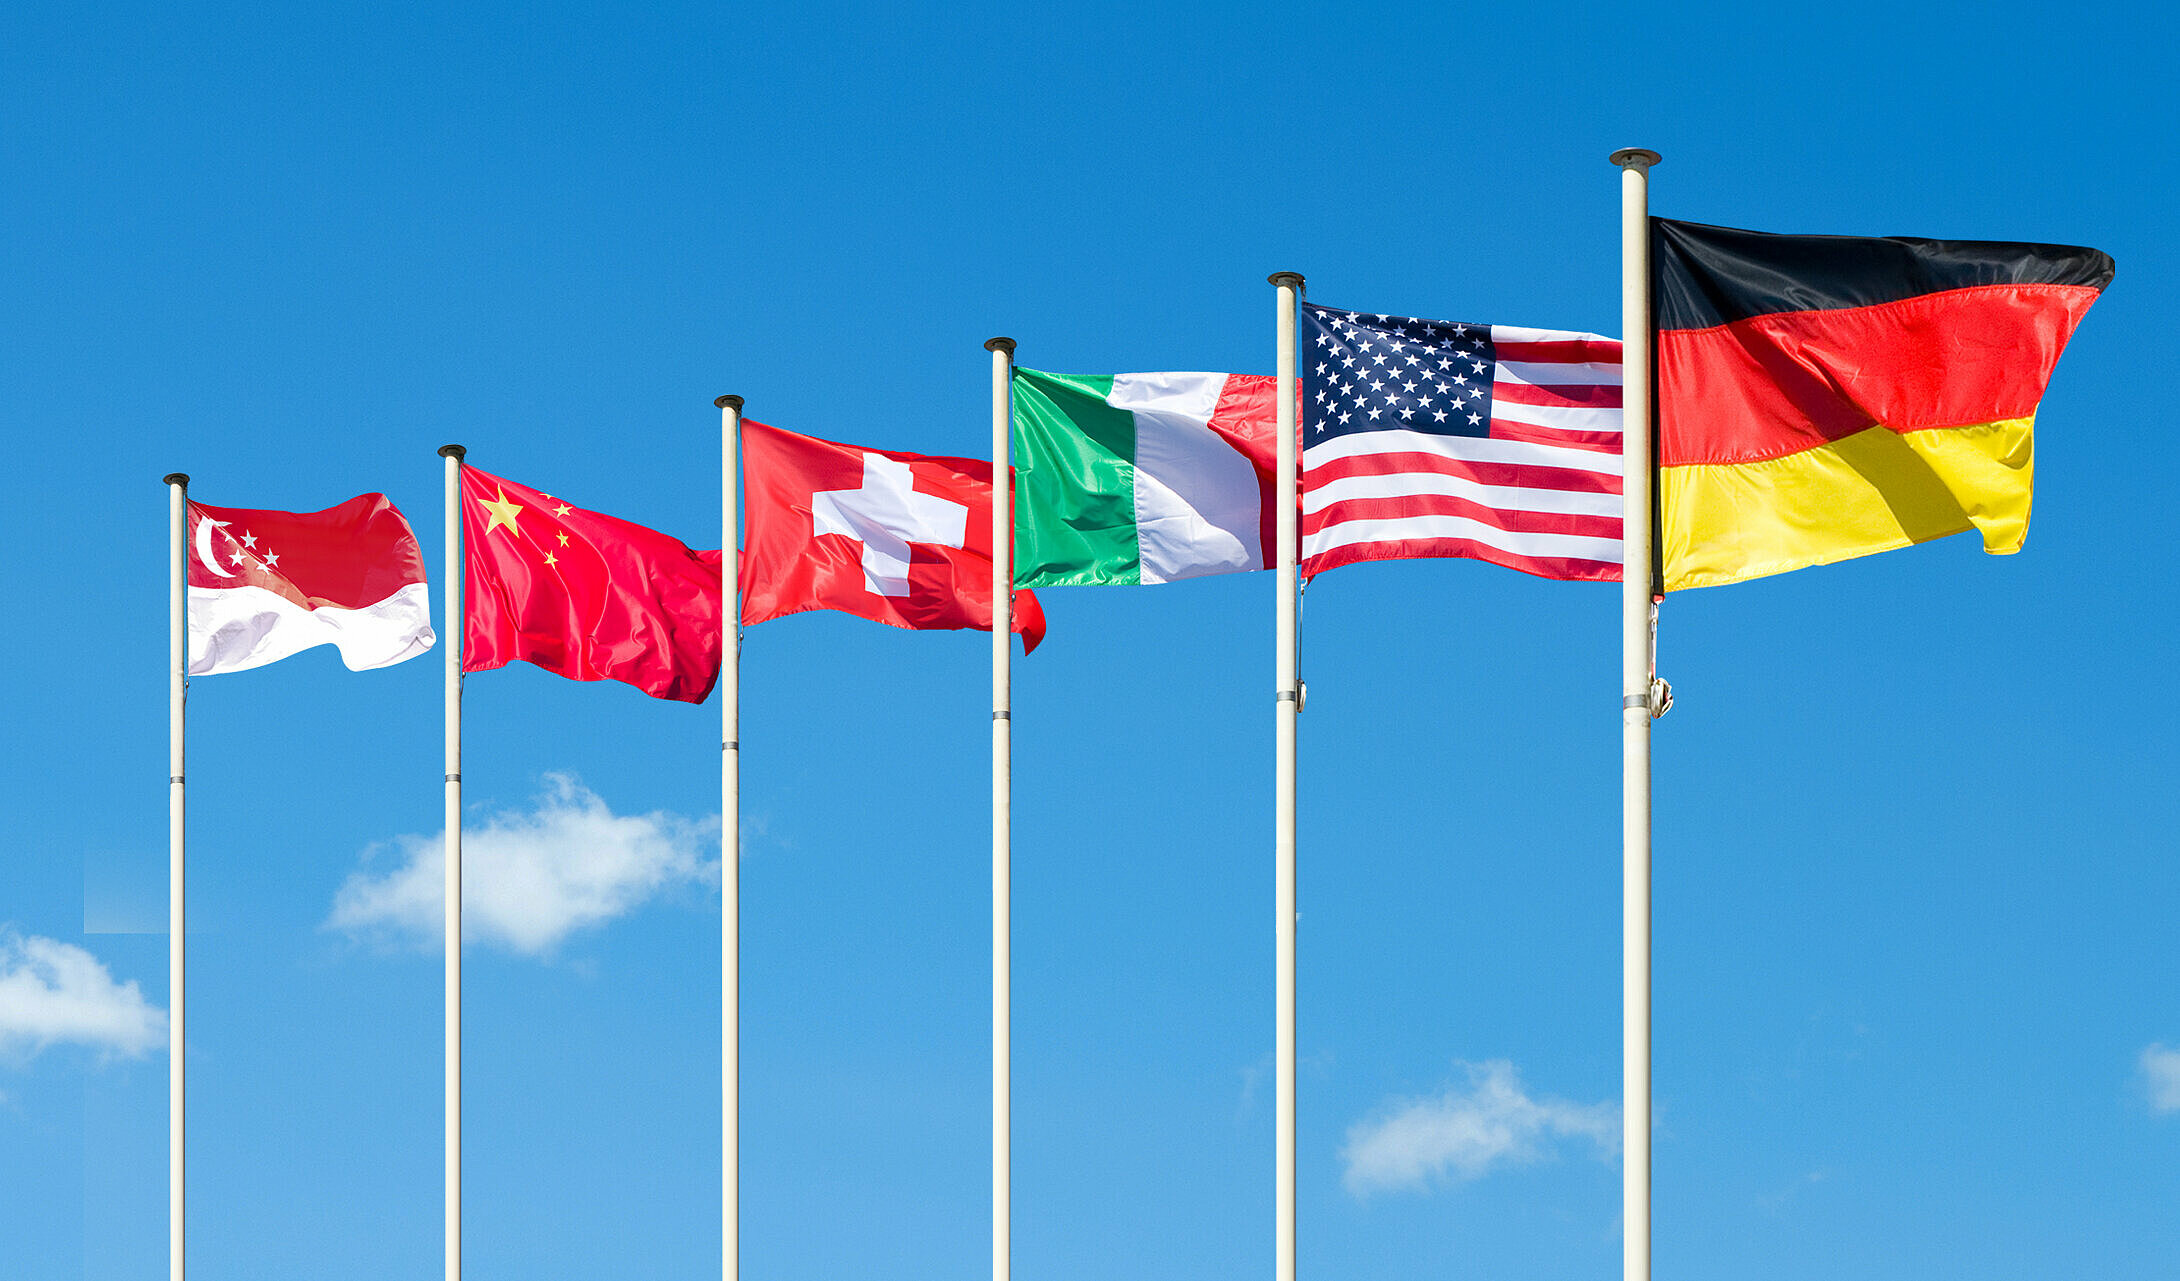 新加坡、中国、瑞士、意大利、美国和德国的国旗在风中飘扬